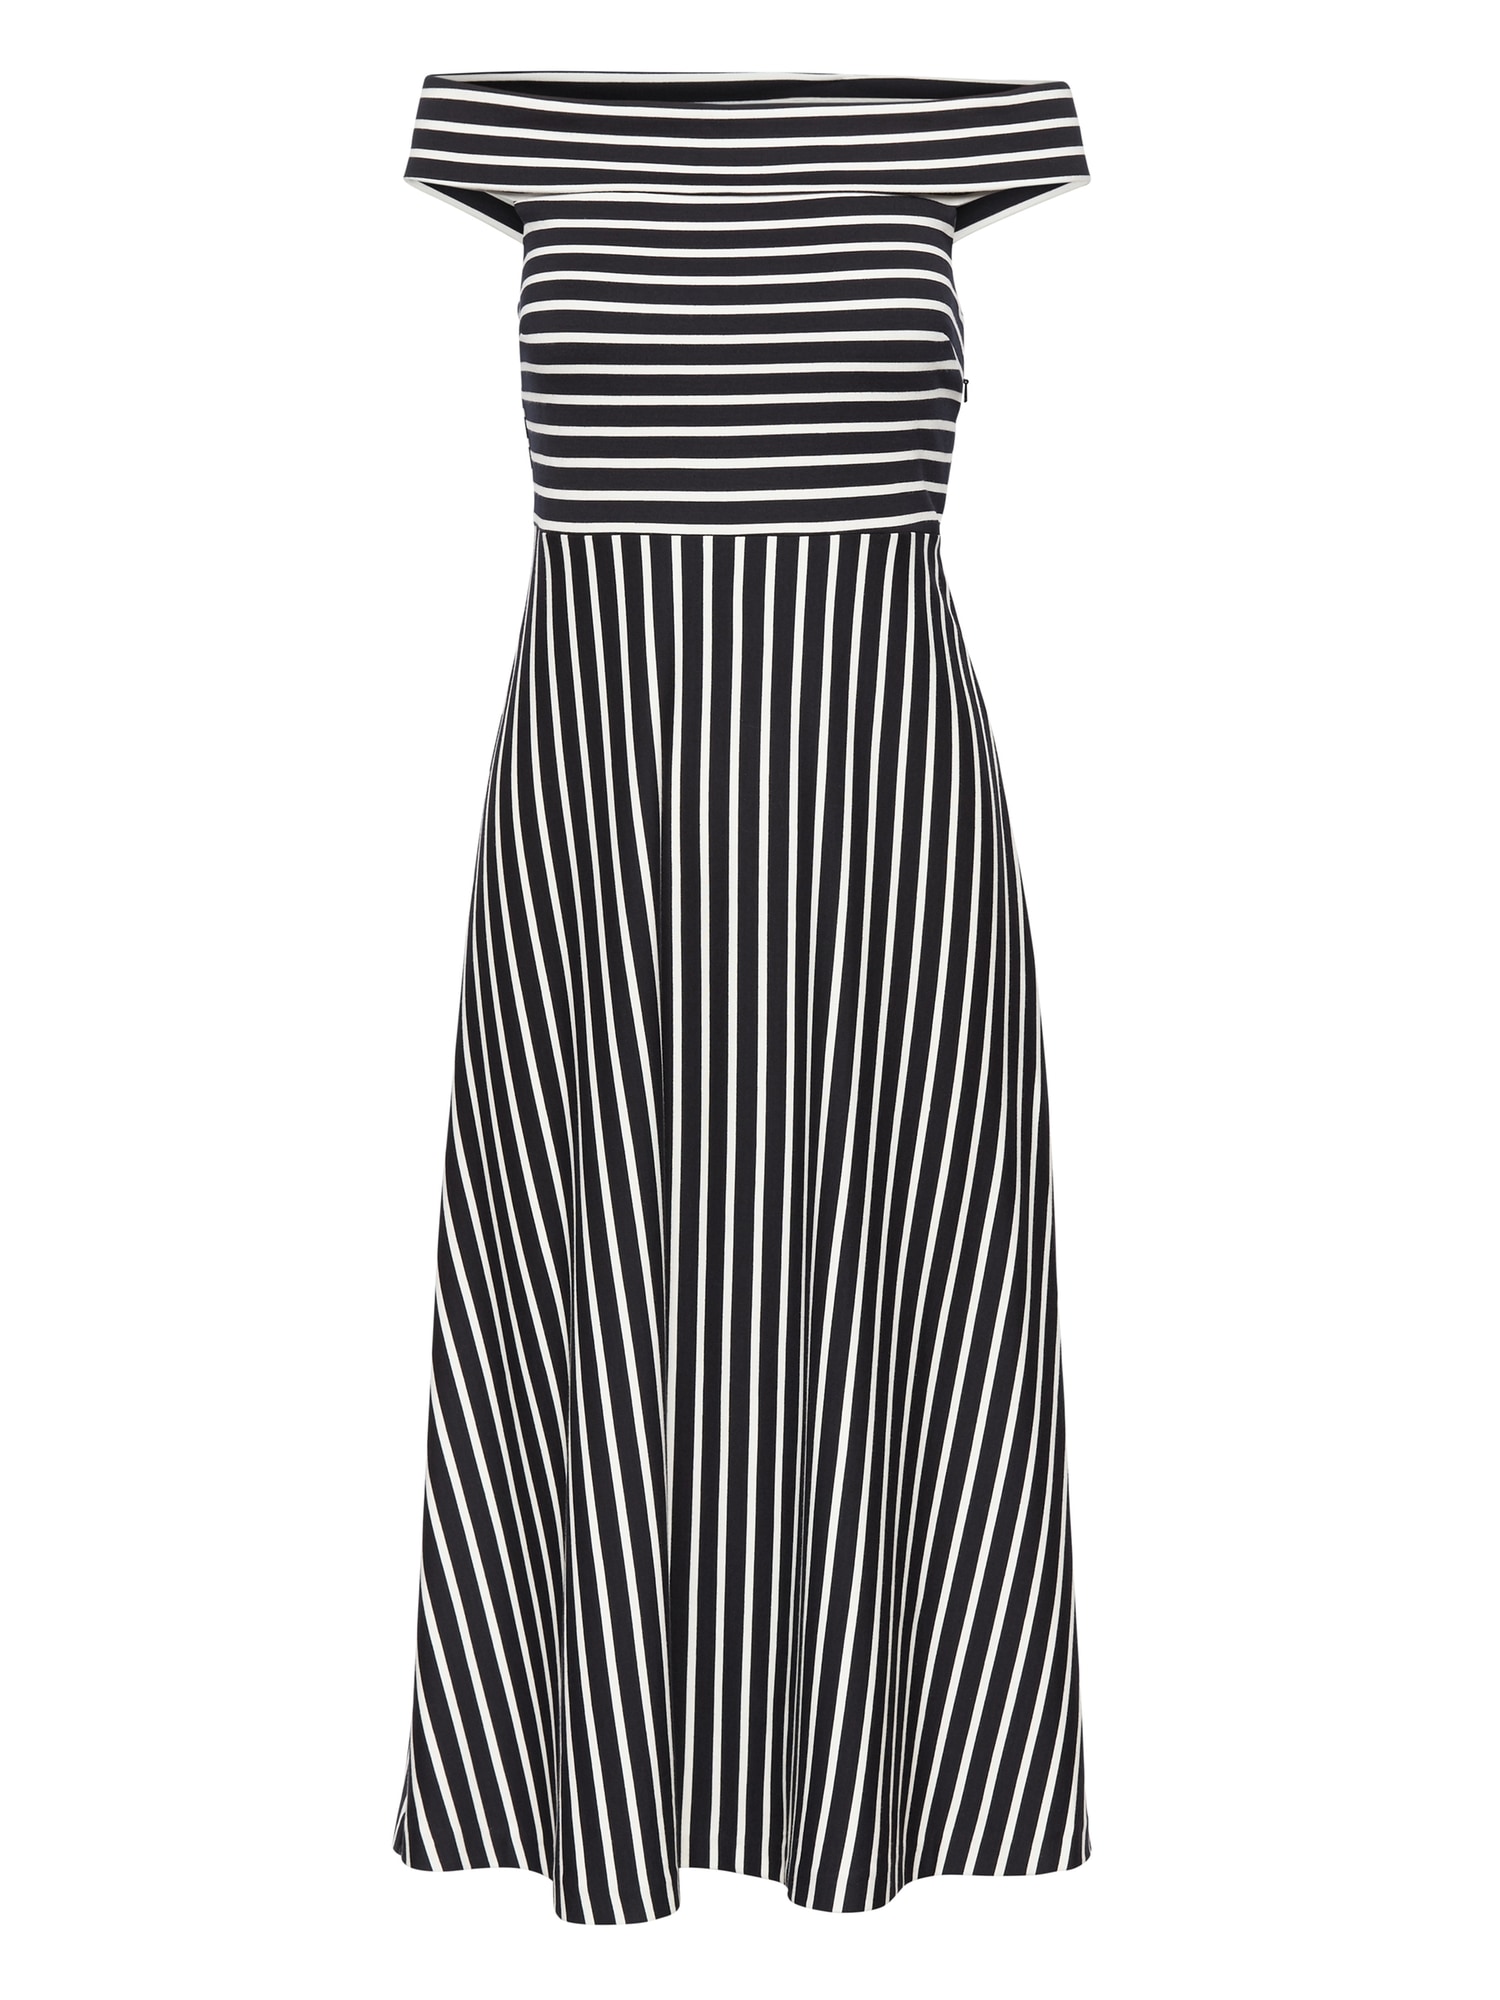 Stripe Ponte Off-the-Shoulder Dress